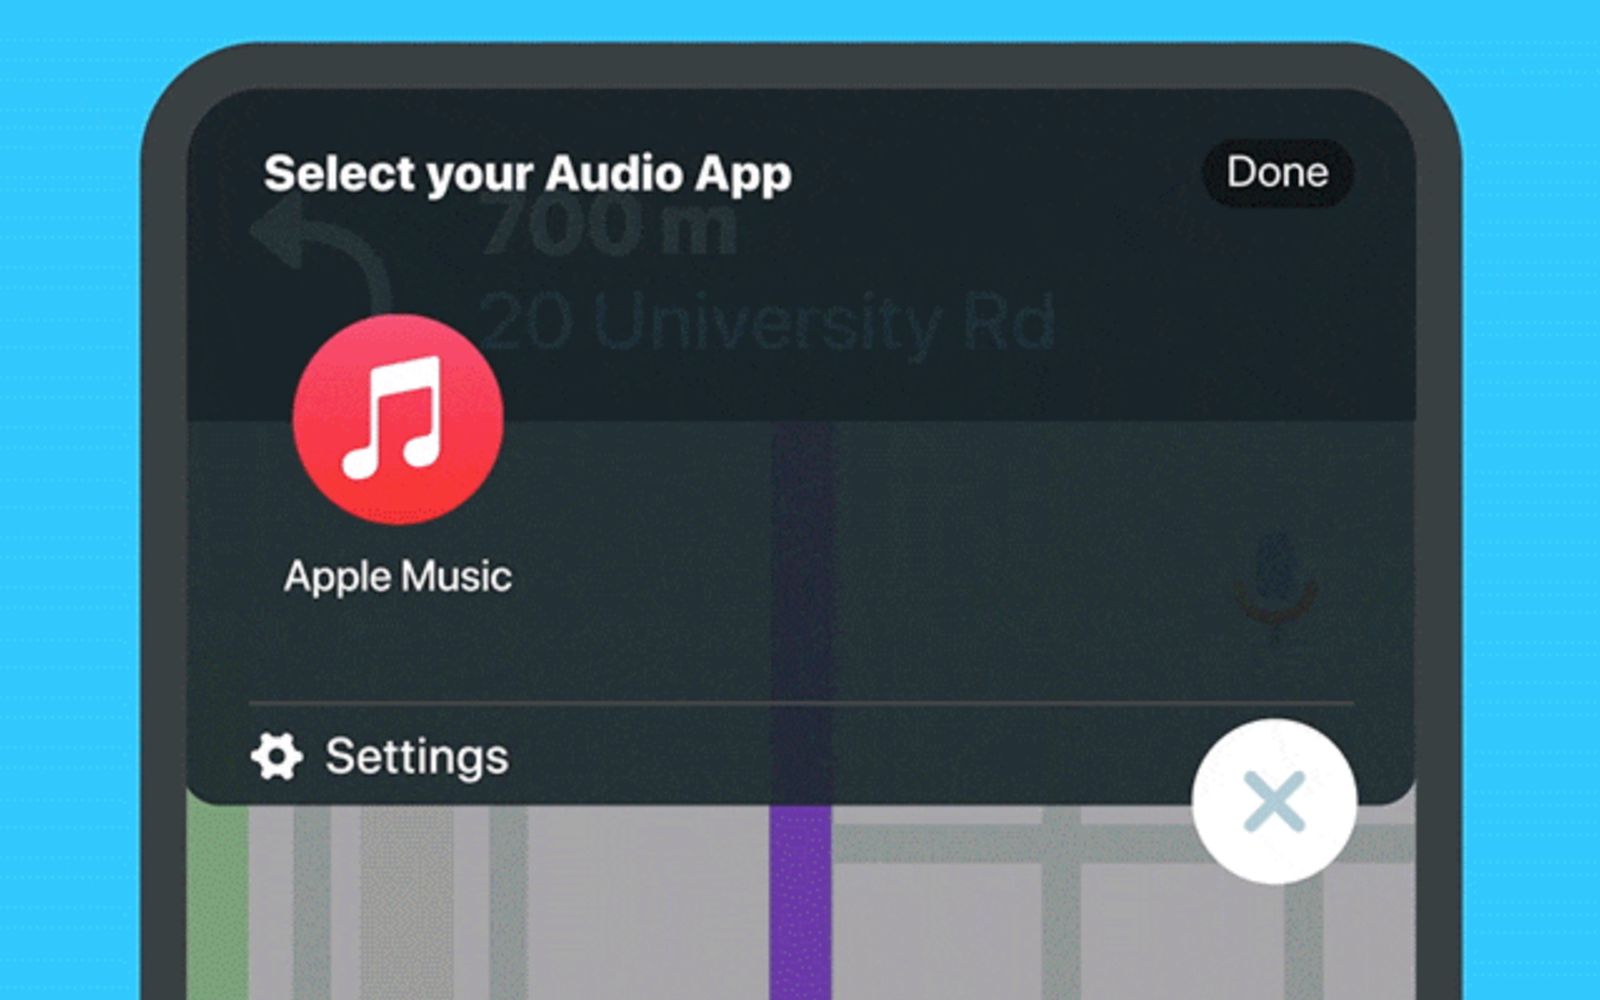 خدمة Apple Music متوفرة الآن عبر Waze